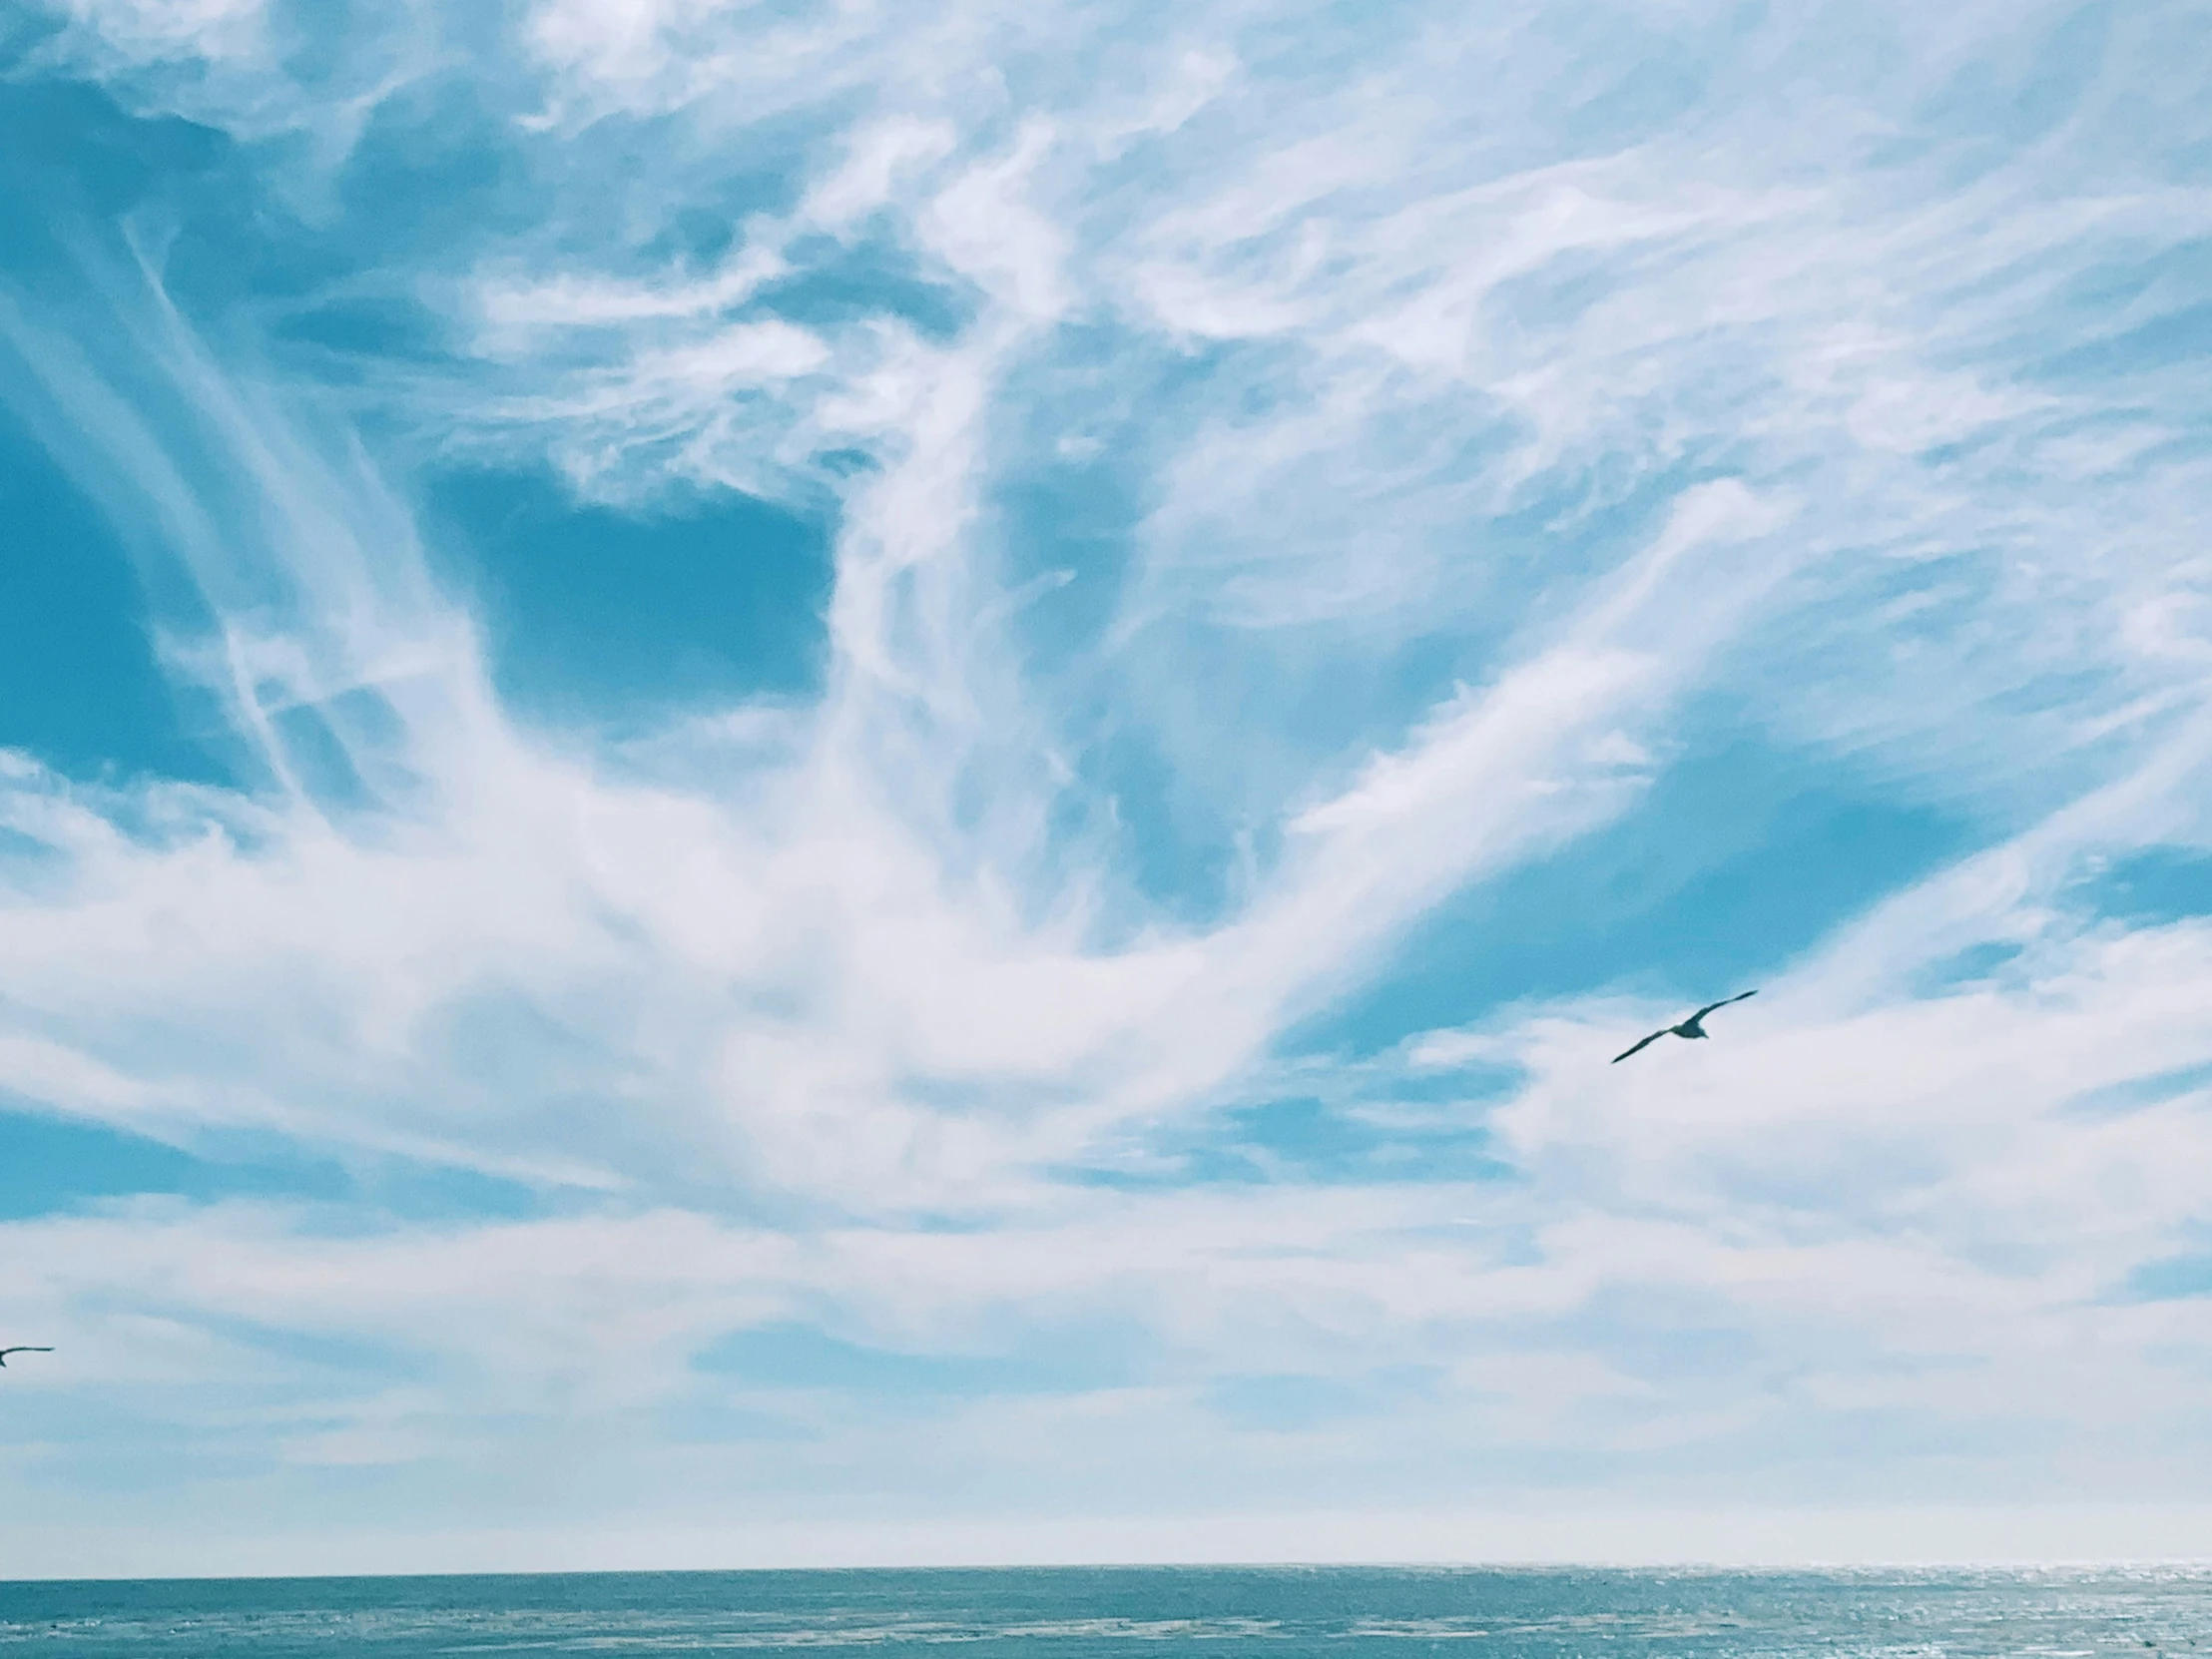 a bird flying across a blue sky over the ocean